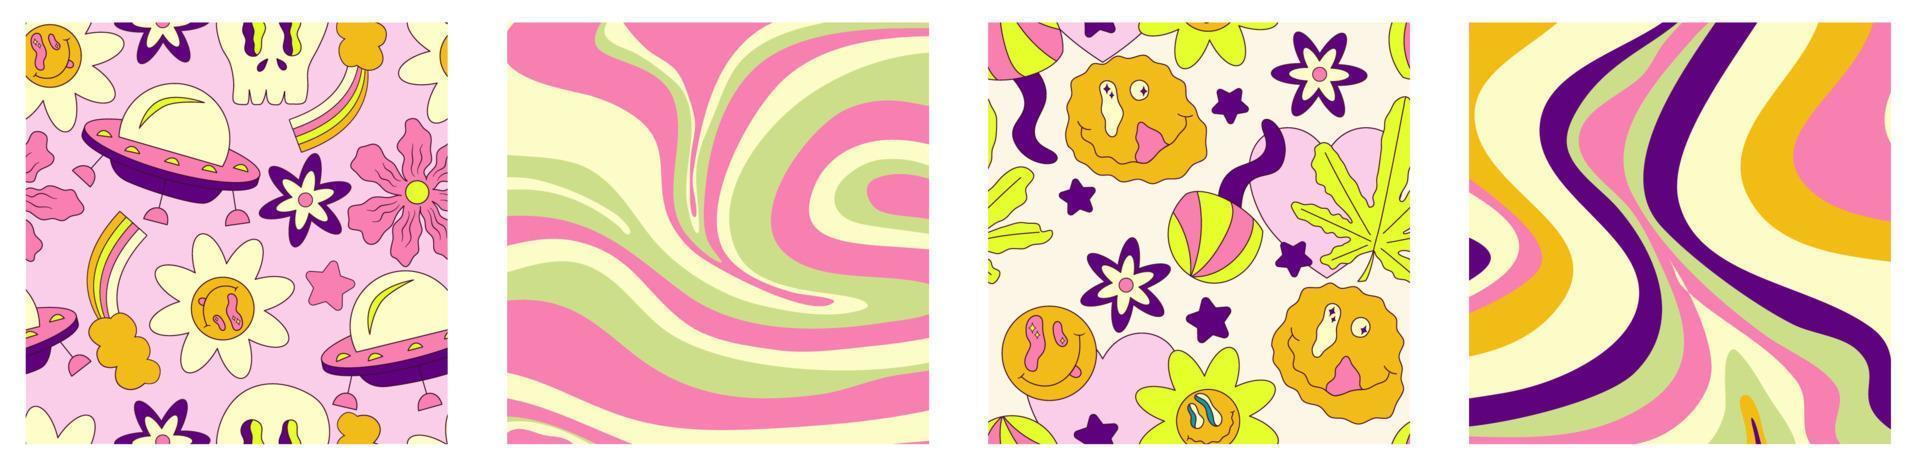 arrière-plan tendance trippant défini design psychédélique. années 2000, années 70, style hippie. illustration florale abstraite. conception d'illustration vectorielle. vague groovy psychédélique. vecteur